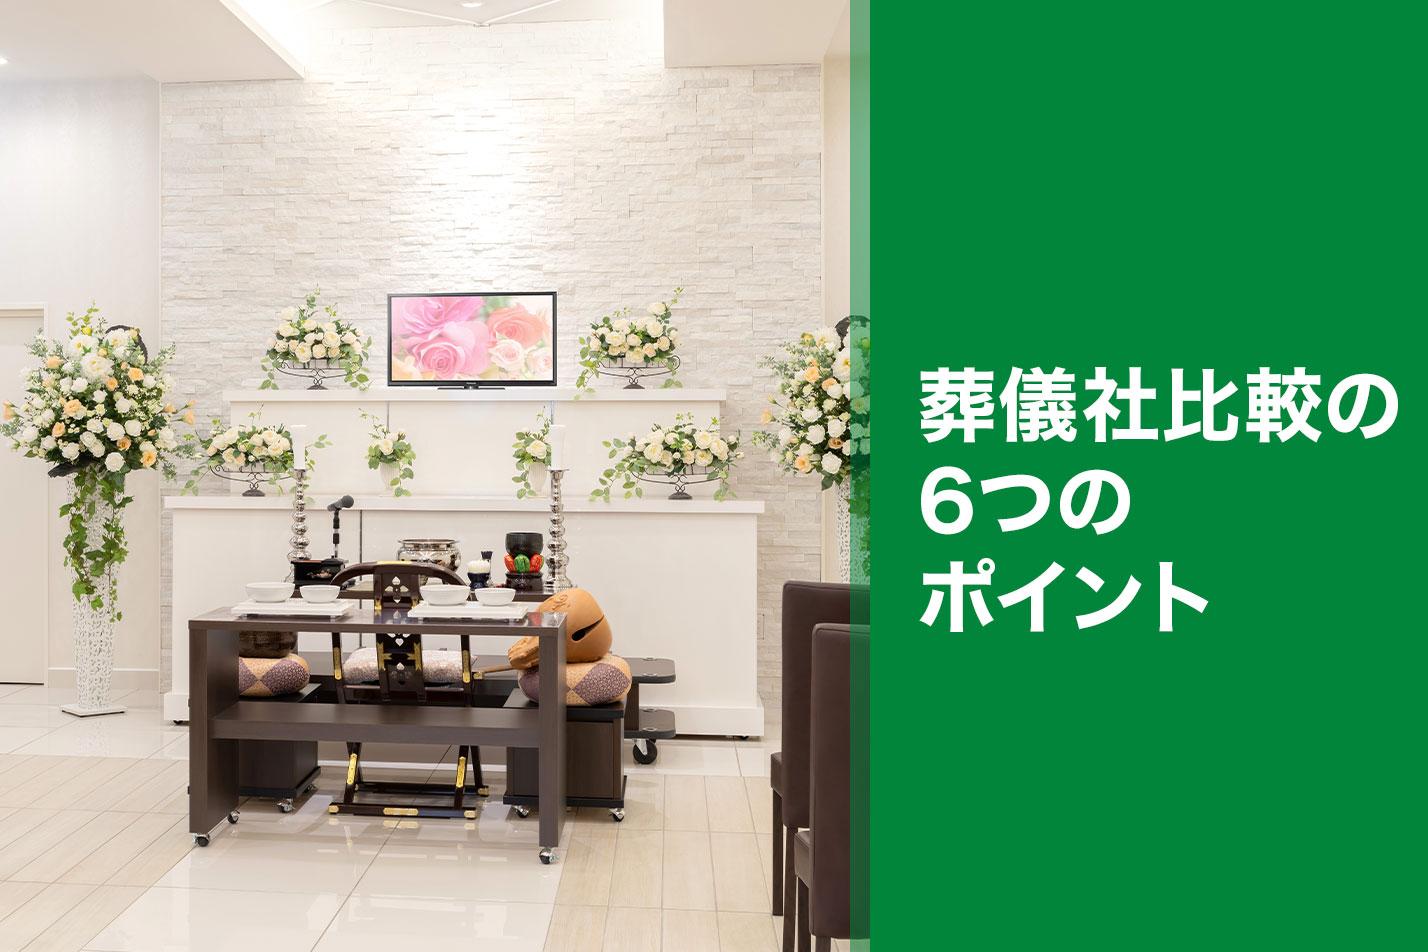  武蔵村山市で葬儀社を比較するなら6つのポイントが大切のイメージ画像